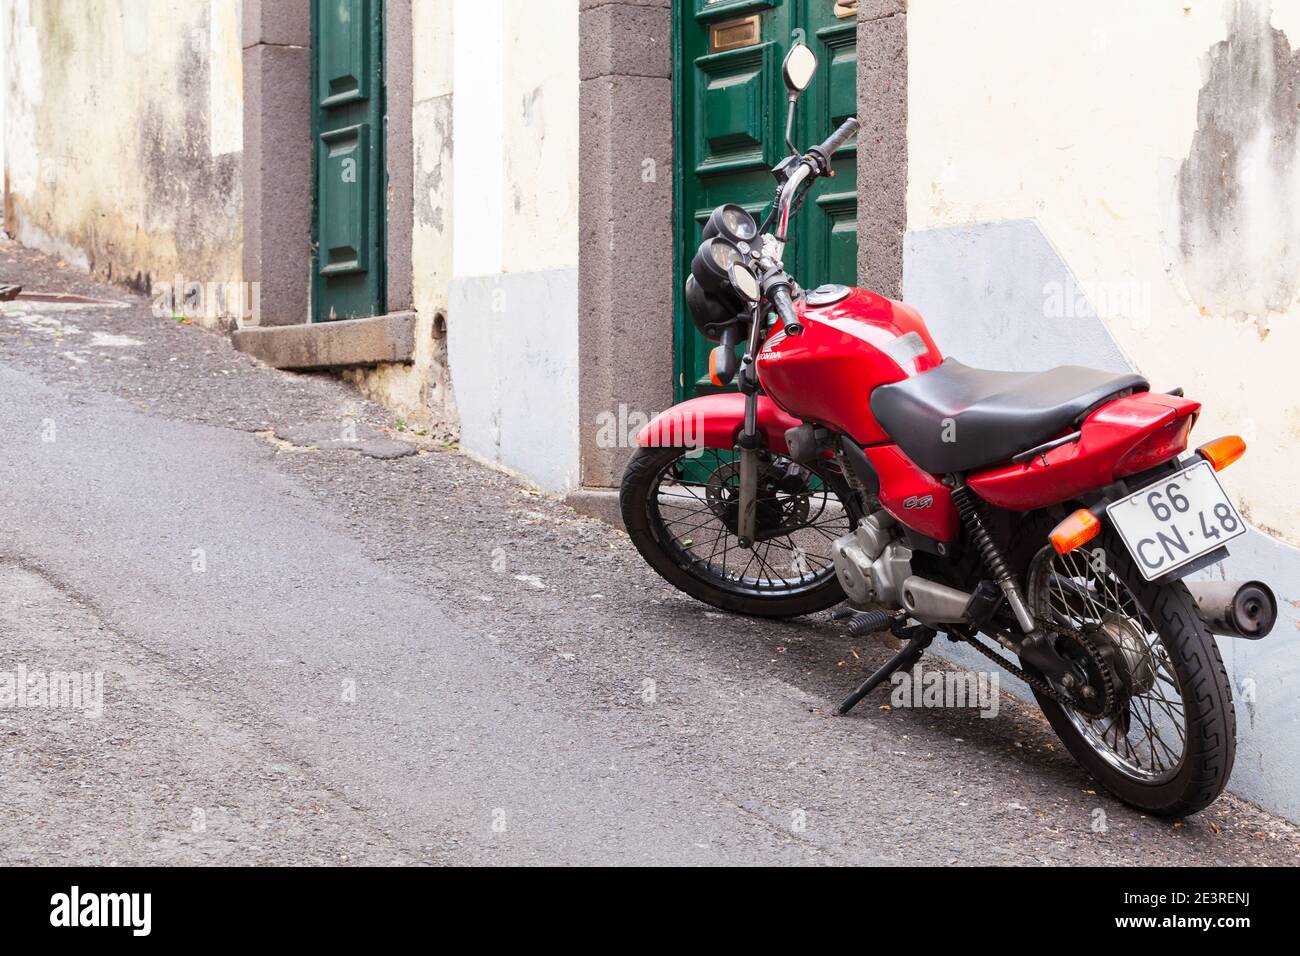 Funchal, Portugal - 24. August 2017: Rote Honda CG125 oder Honda CG steht in der Nähe der alten Mauer auf einer schmalen Straße, Rückansicht. Es ist ein Pendler motorcycl Stockfoto